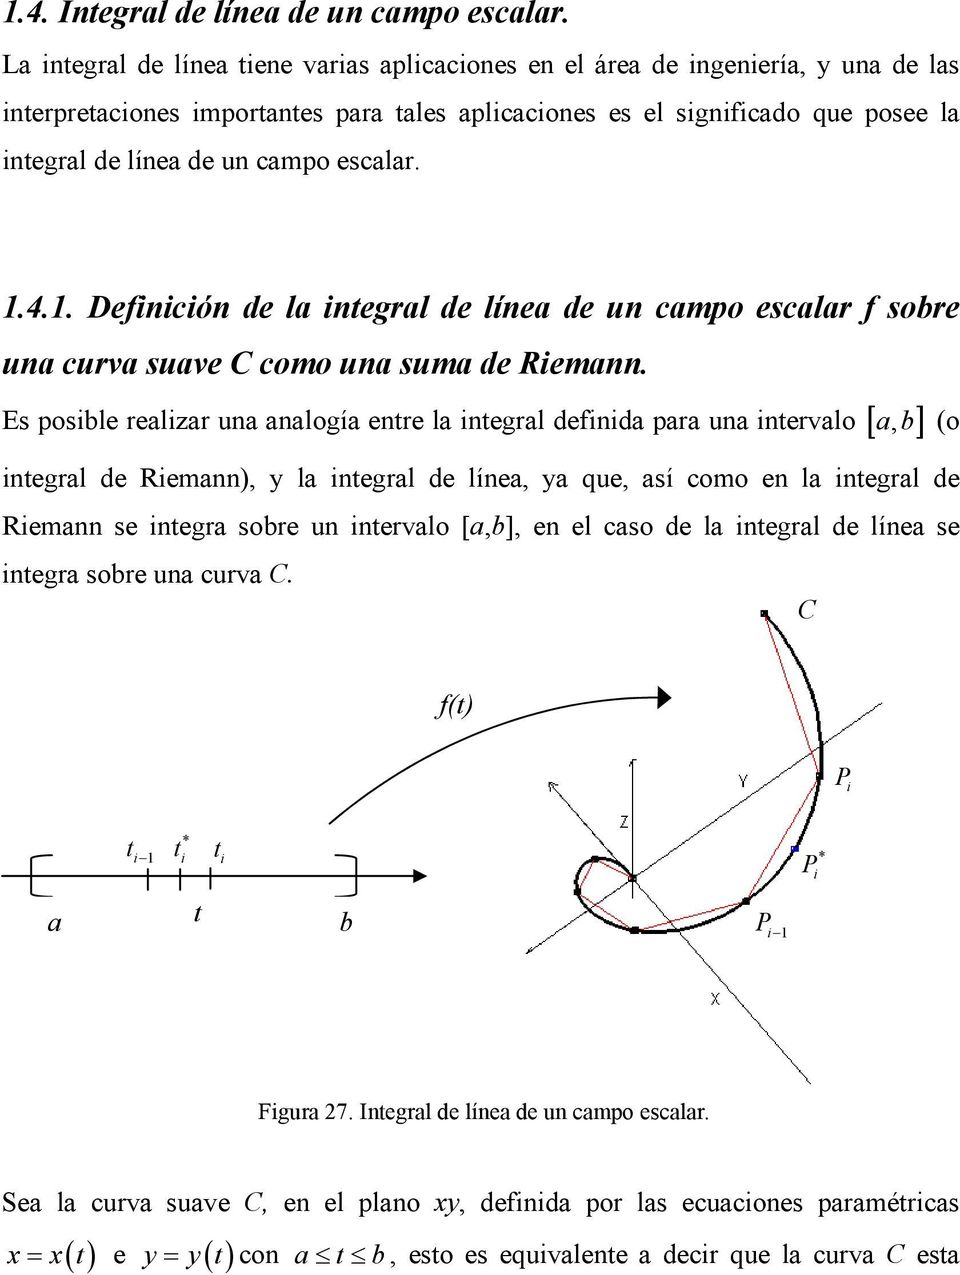 . Definición de l integrl de líne de un cmpo esclr f sobre un curv suve como un sum de Riemnn.